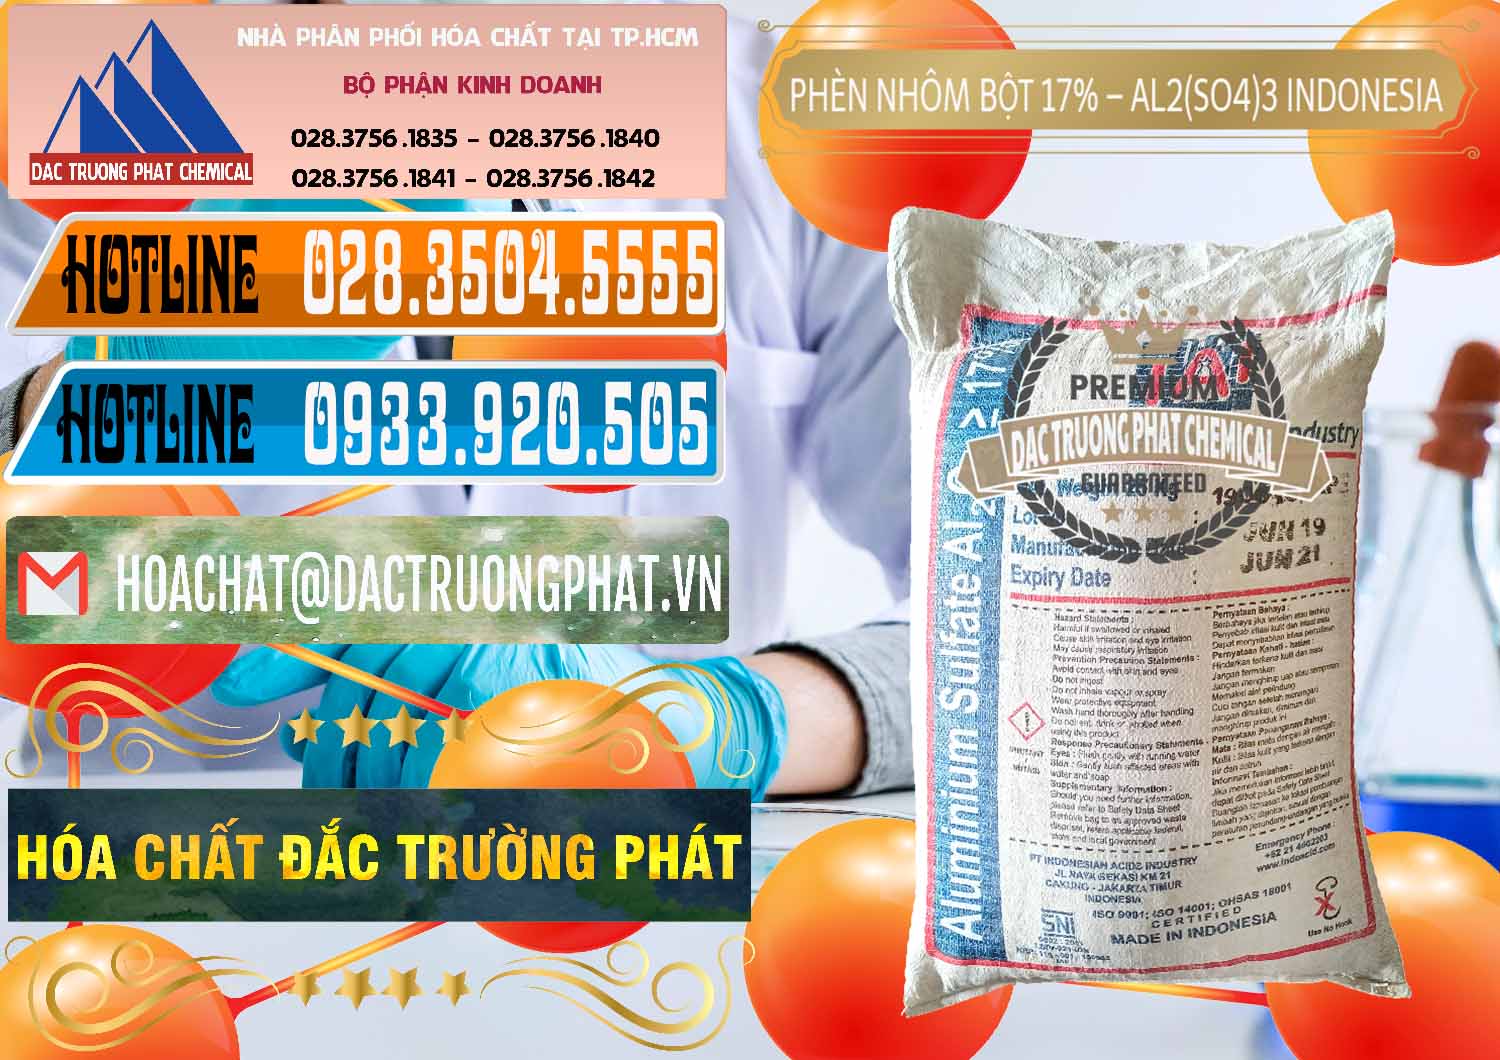 Đơn vị bán - phân phối Phèn Nhôm Bột - Al2(SO4)3 17% bao 25kg Indonesia - 0114 - Cty chuyên cung ứng và phân phối hóa chất tại TP.HCM - stmp.net